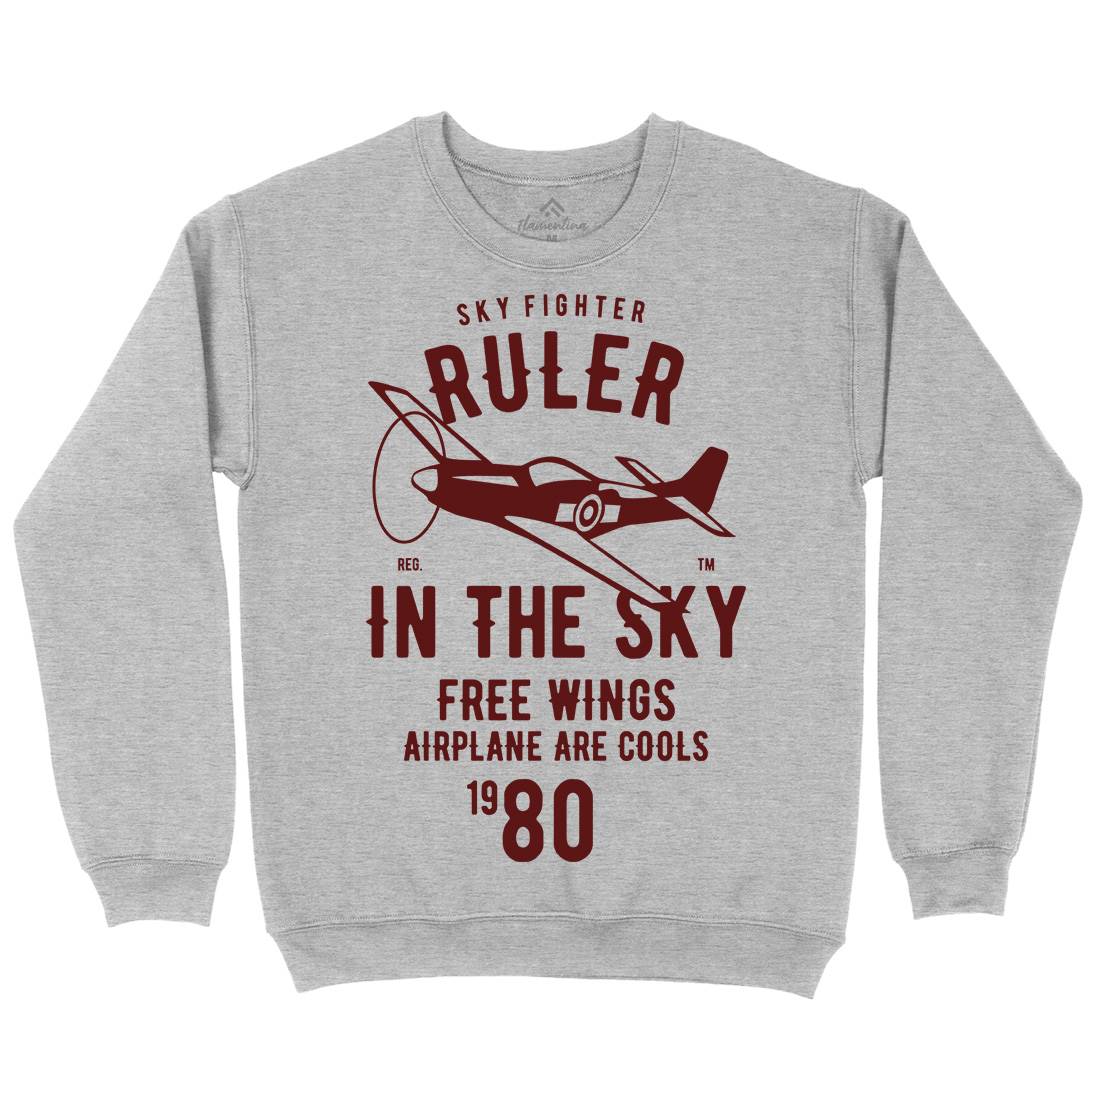 Ruler In The Sky Kids Crew Neck Sweatshirt Vehicles B443